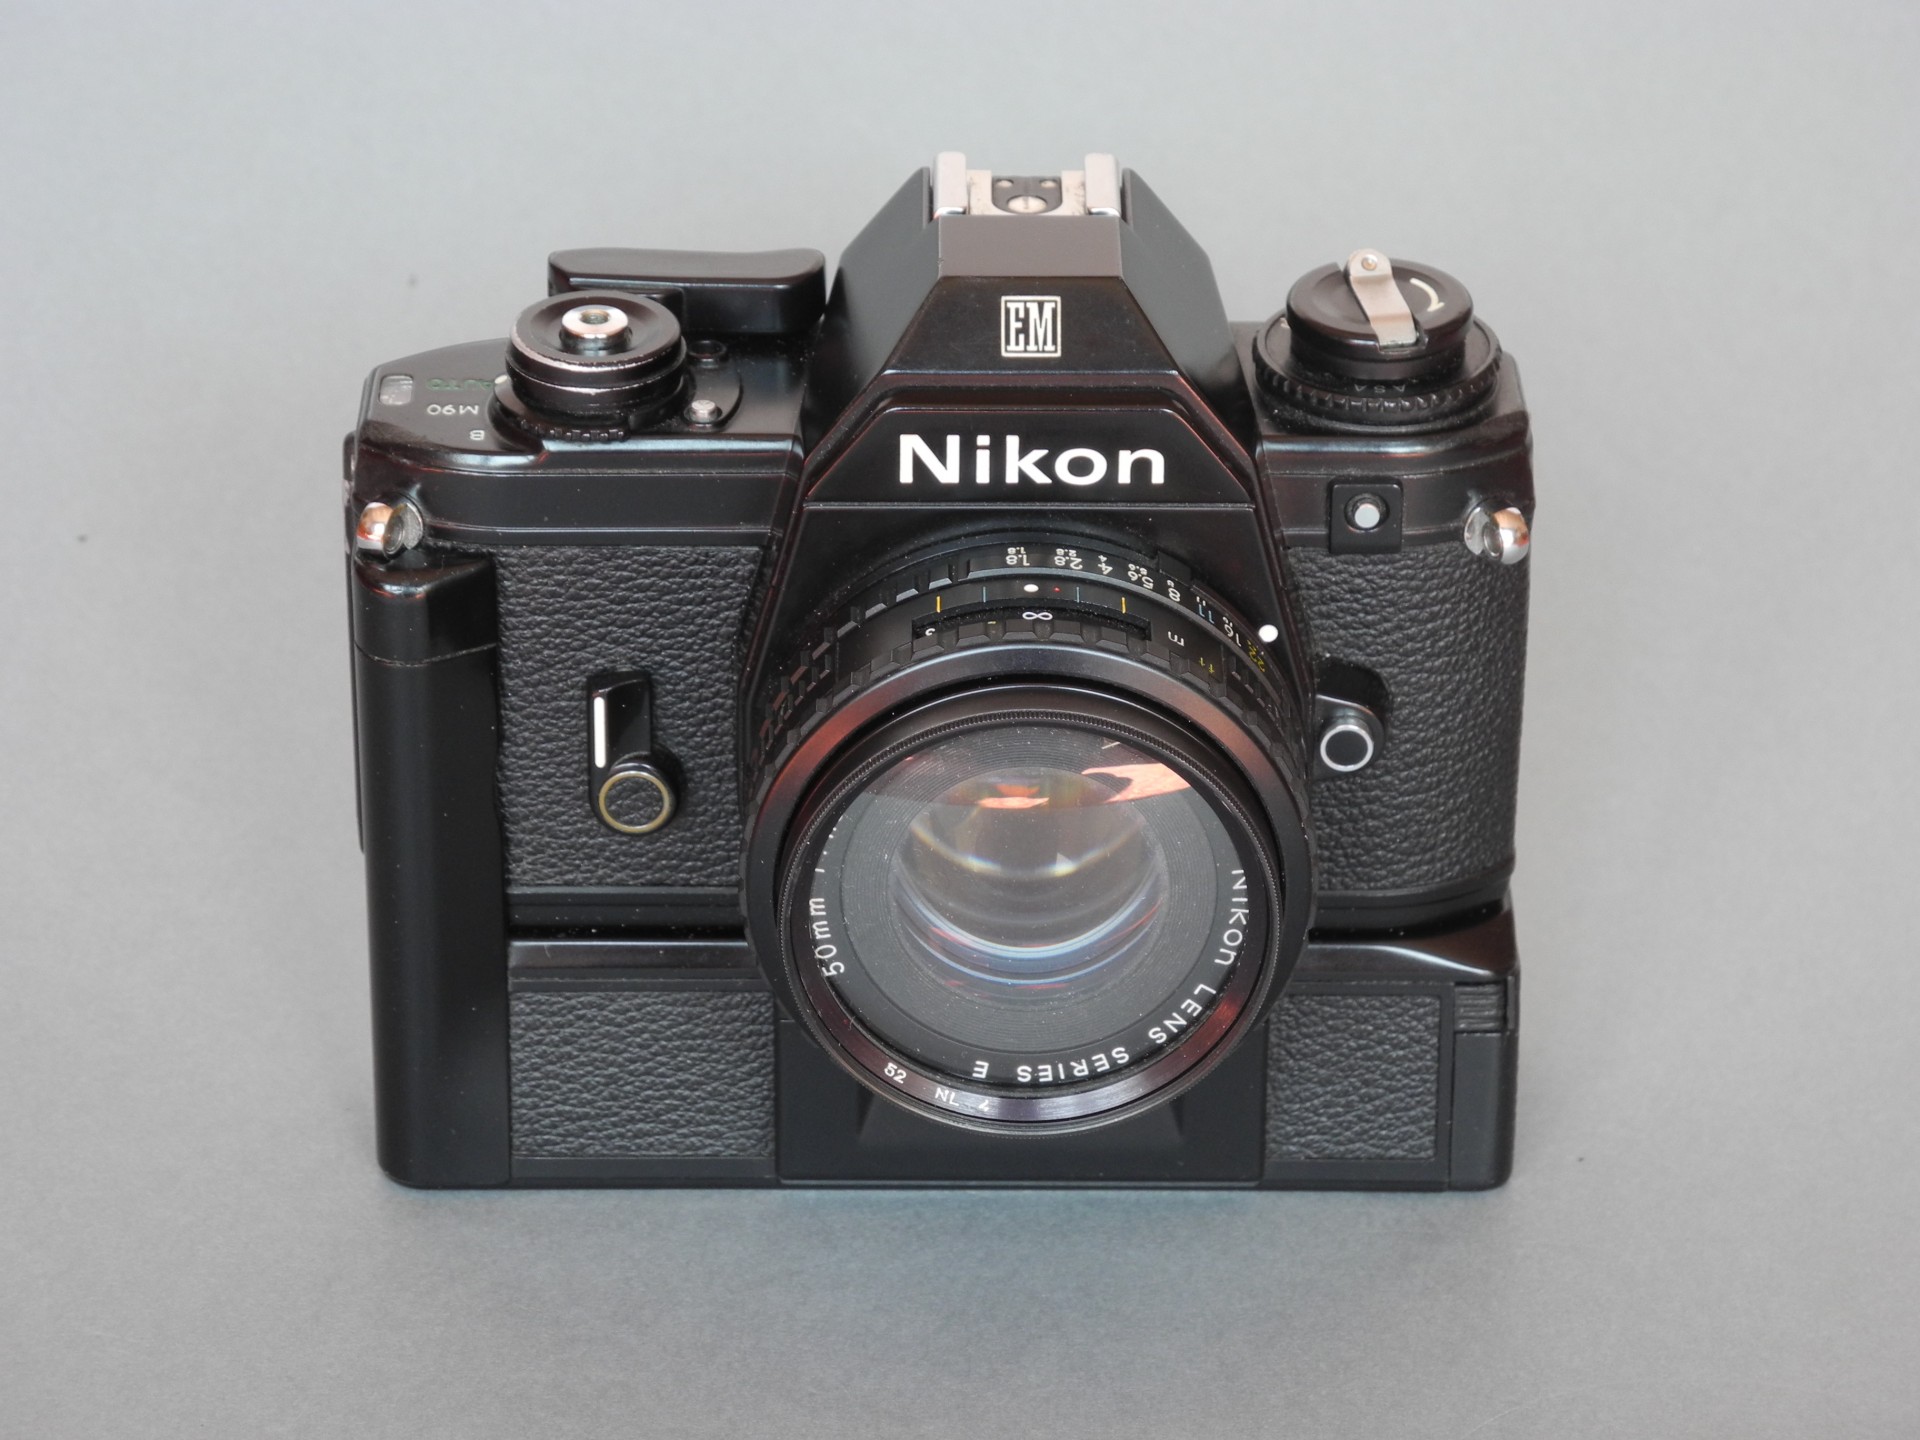 *Nikon EM1979 (gainage façon cuir) petit bouton argenté en facade*